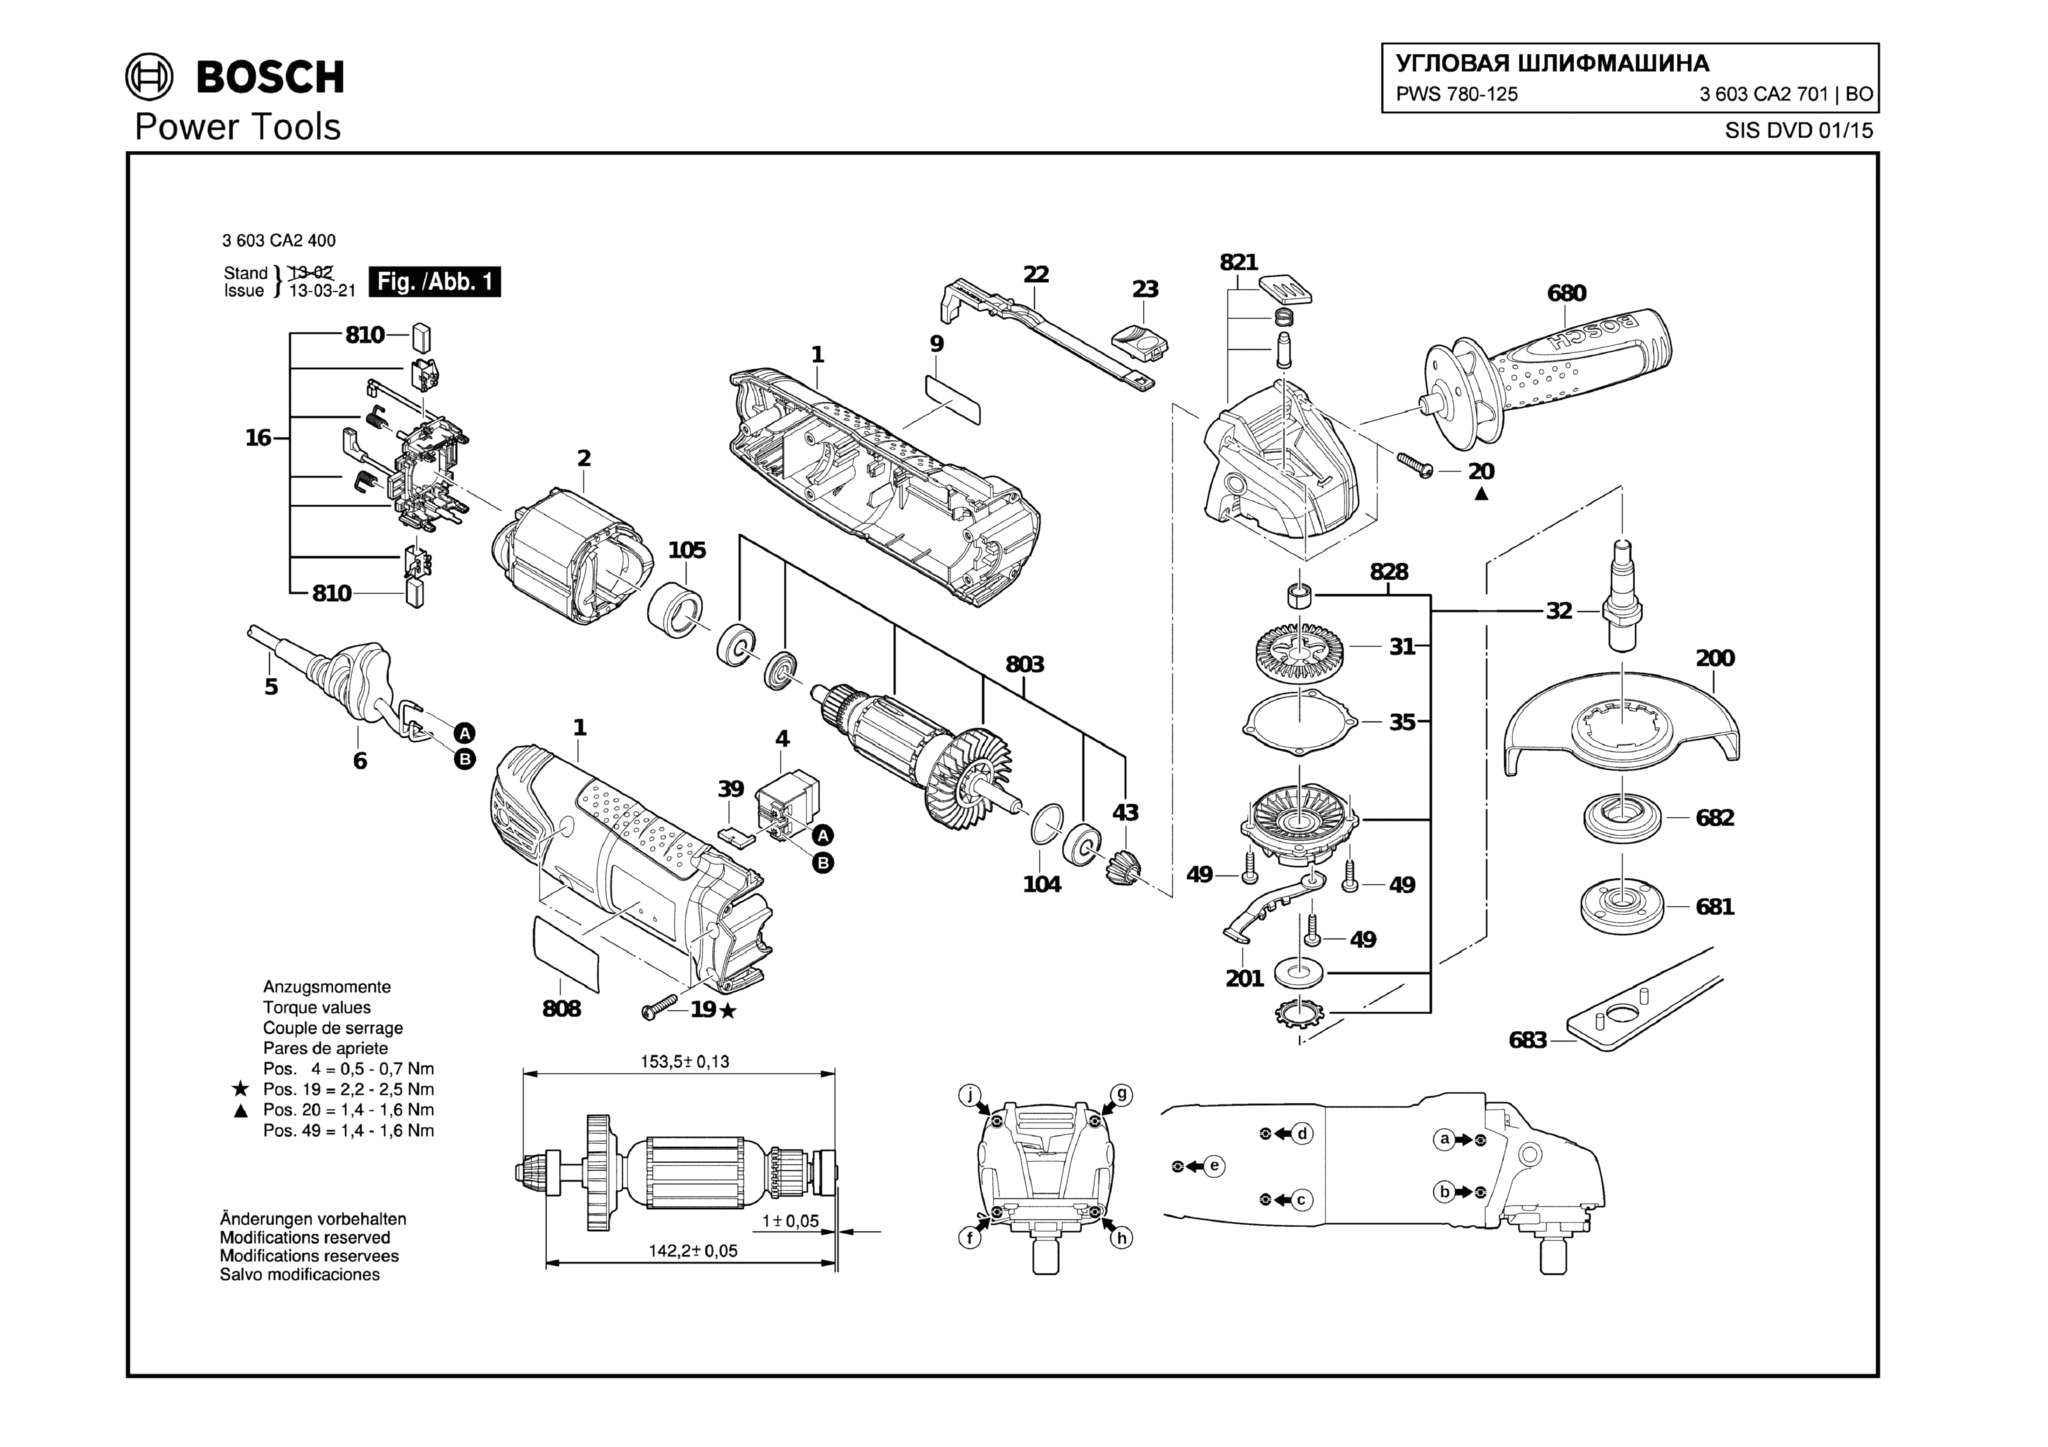 Запчасти, схема и деталировка Bosch PWS 780-125 (ТИП 3603CA2701)